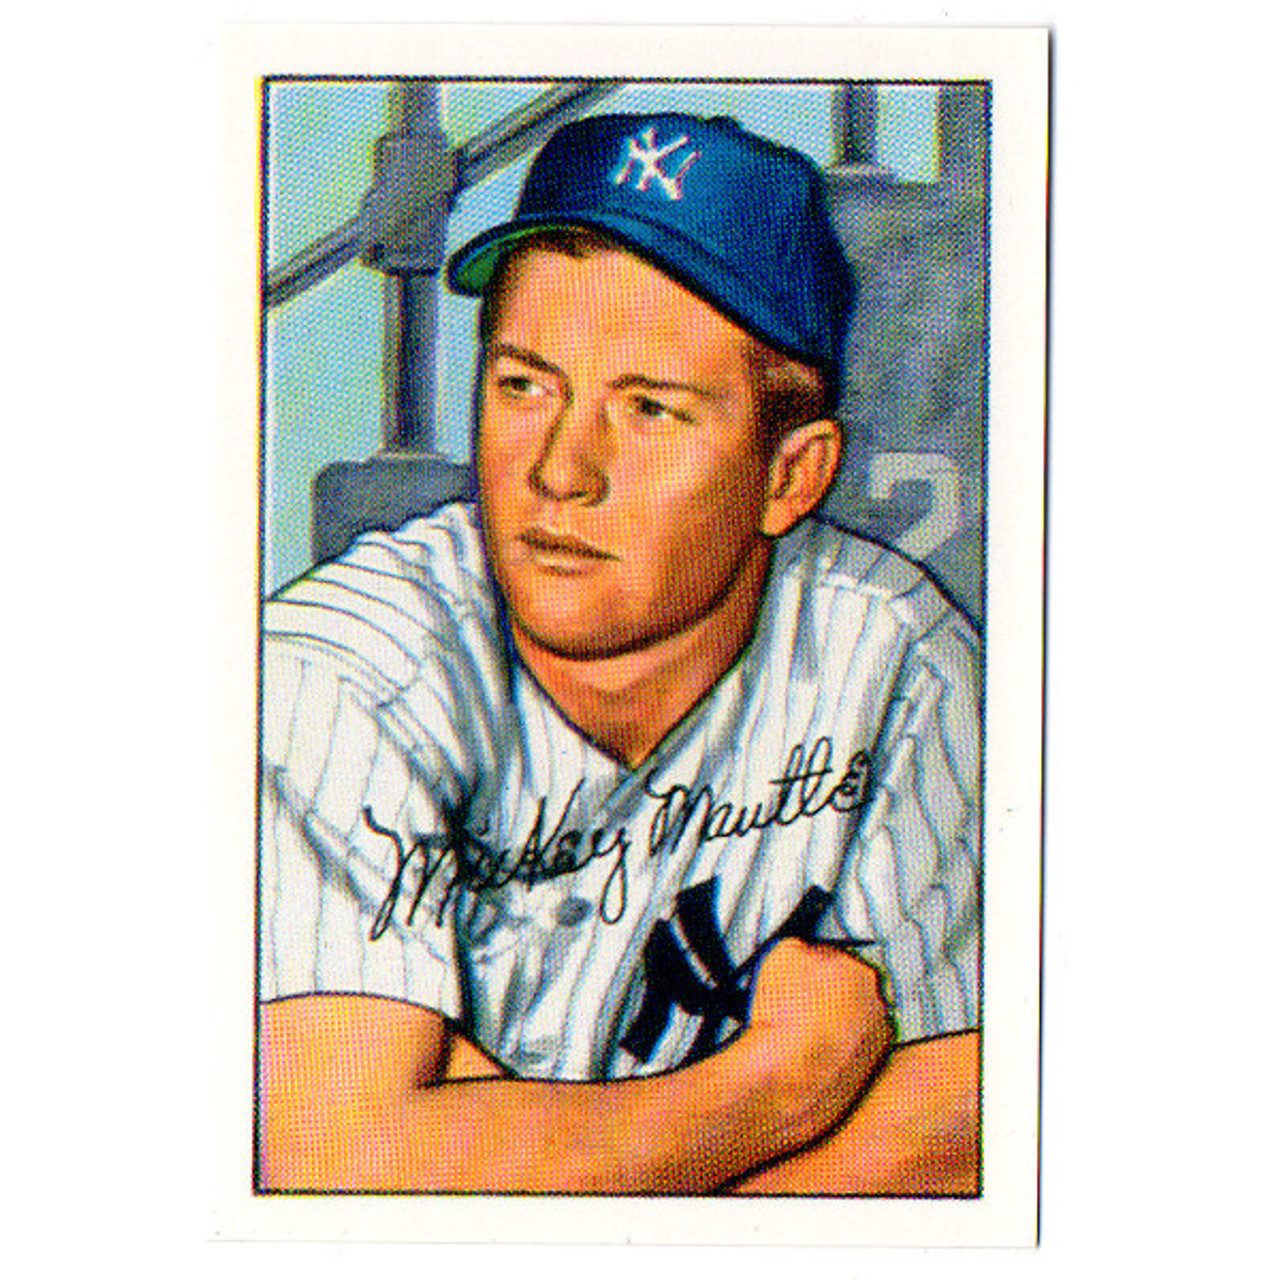 PRINTED 1952 MICKEY MANTLE Baseball Card Numeric printed N.Y New York Yankees 